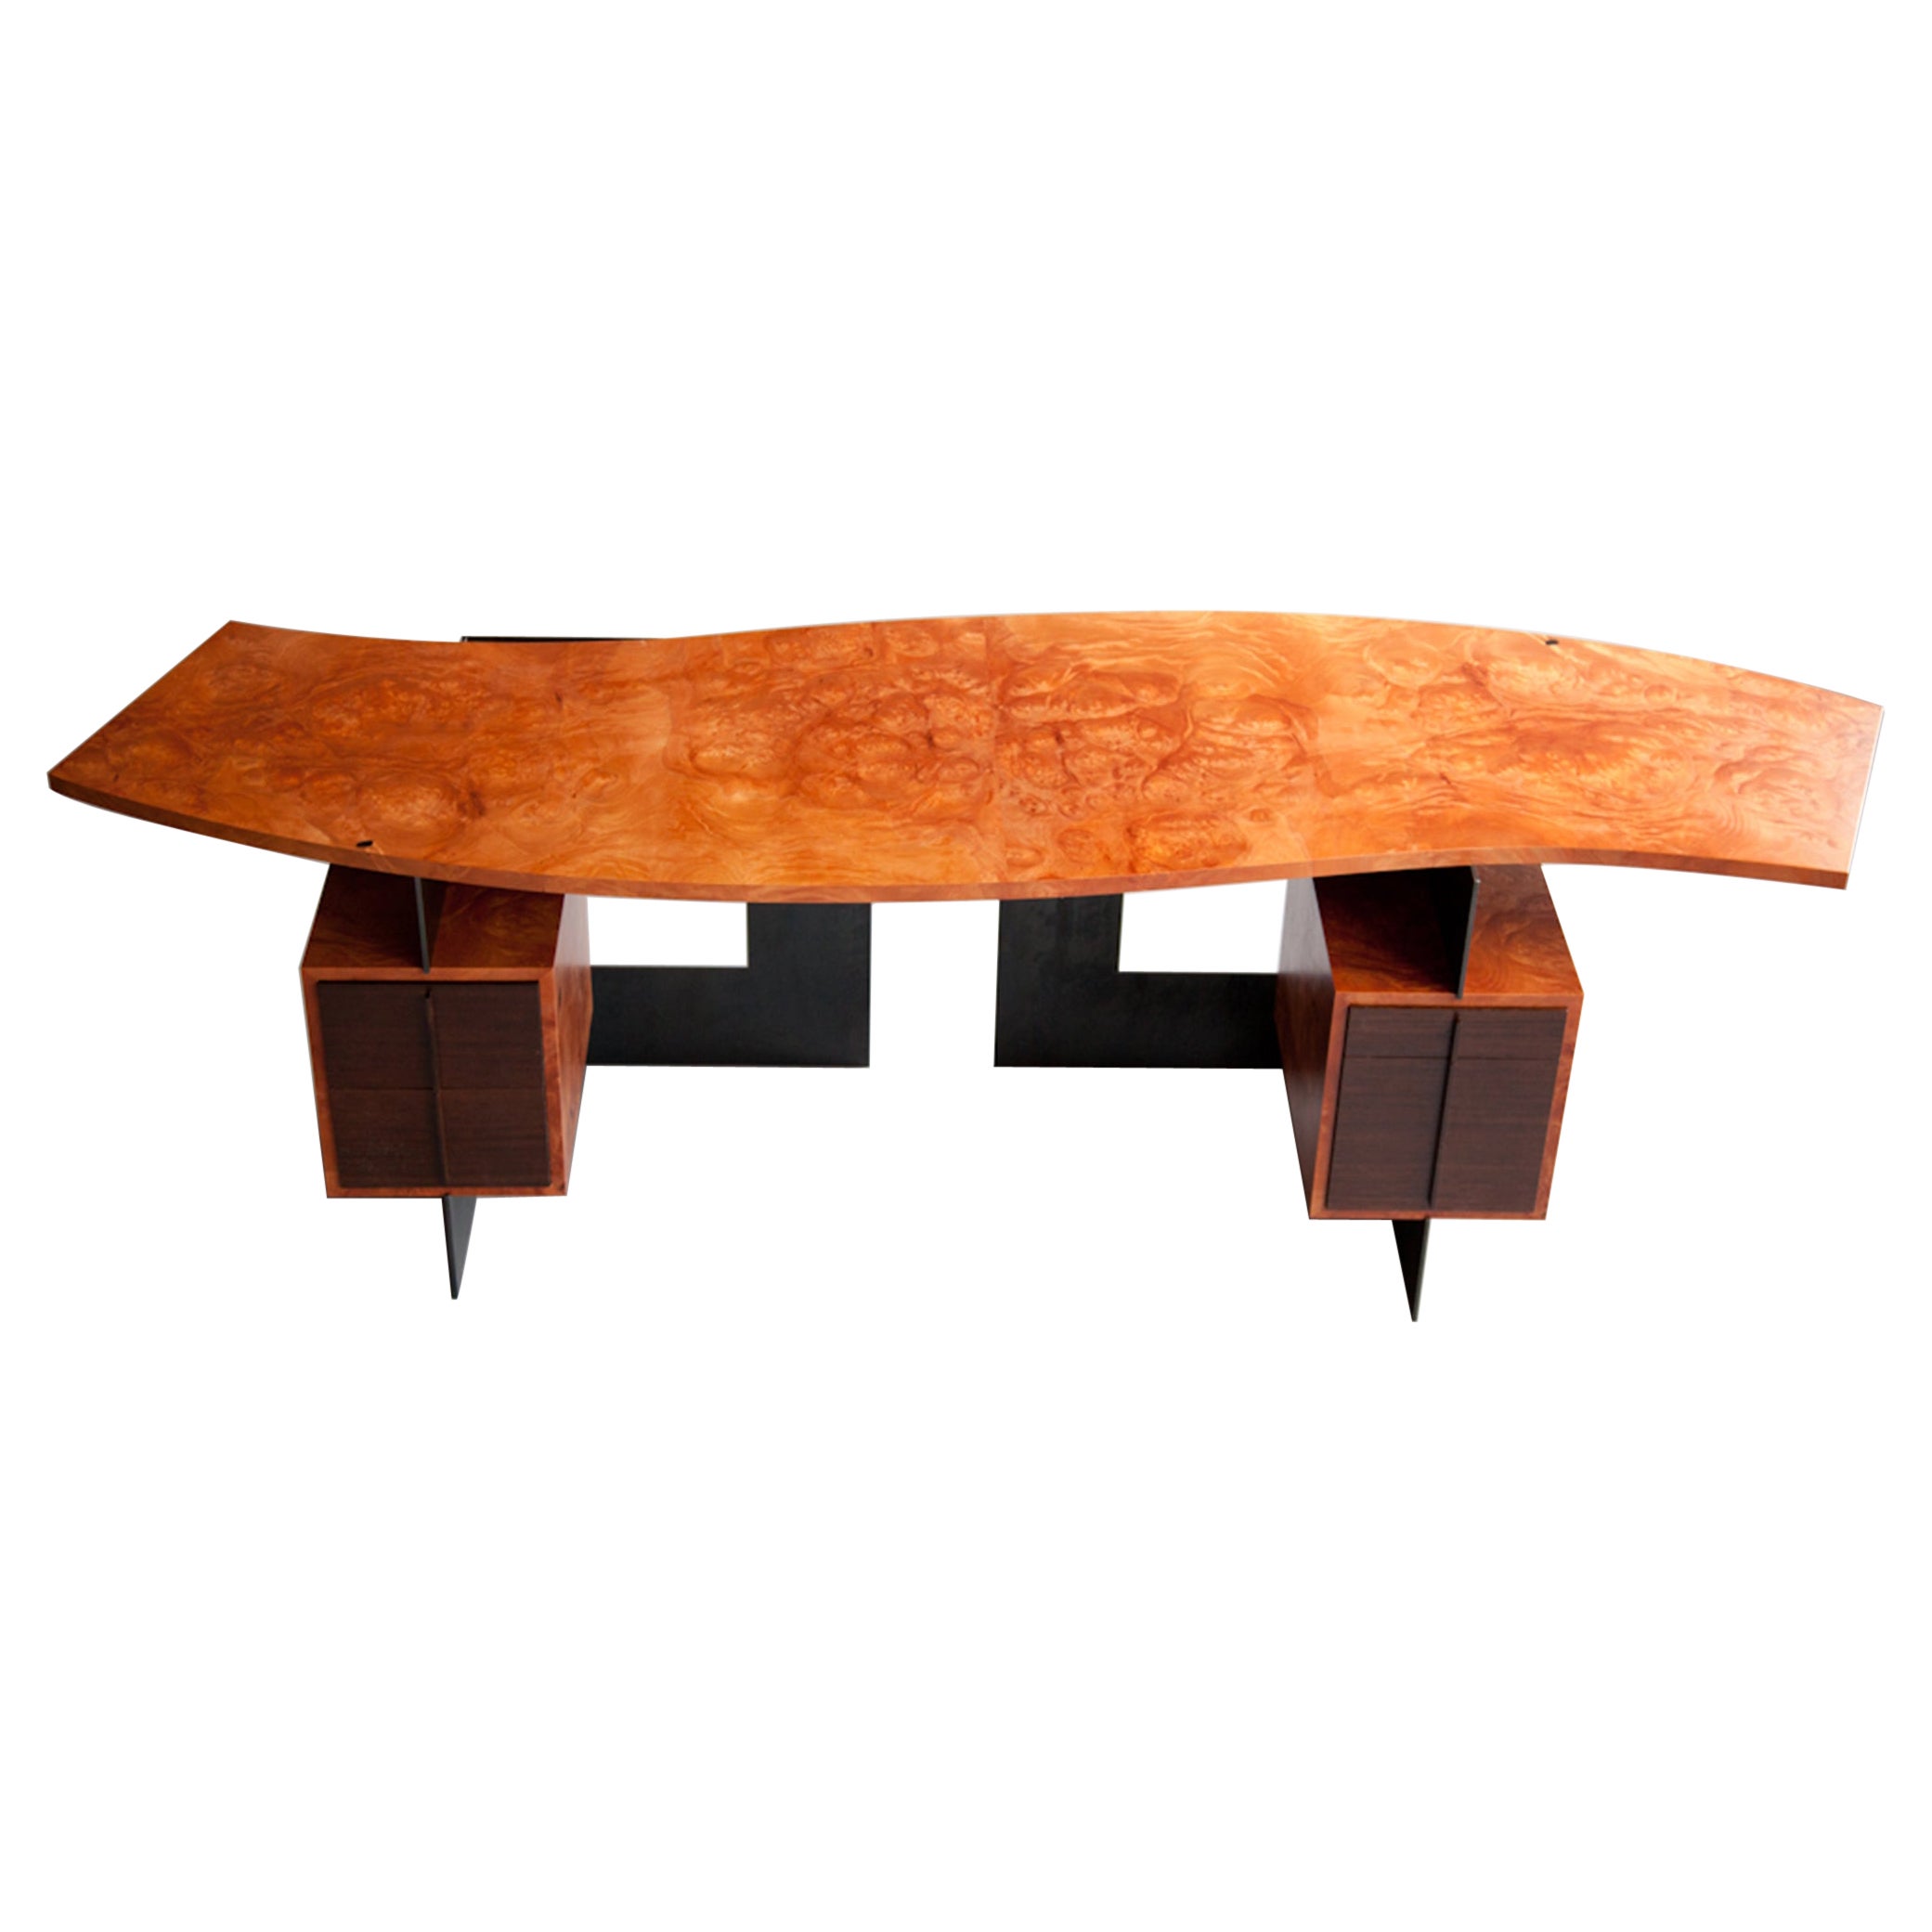 Cinnamon desk in wood veneer burl and blackened steel by Adam Bentz